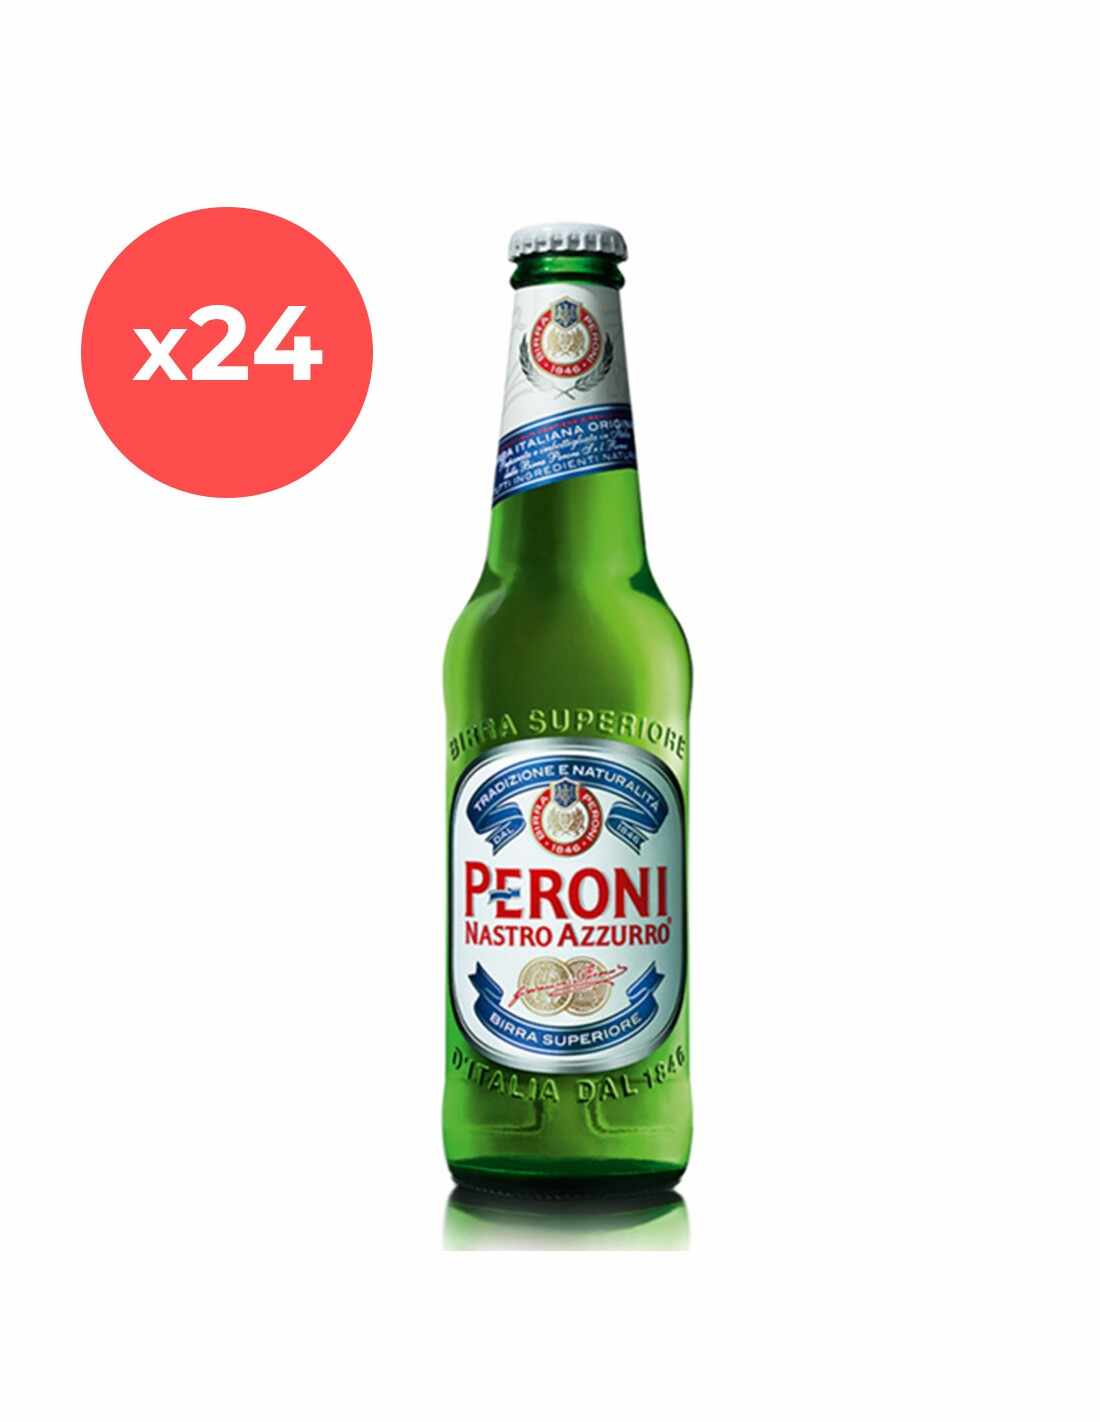 Bax 24 bucati bere blonda, filtrata Peroni Nastro Azzurro, 5.1% alc., 0.33L, sticla, Italia